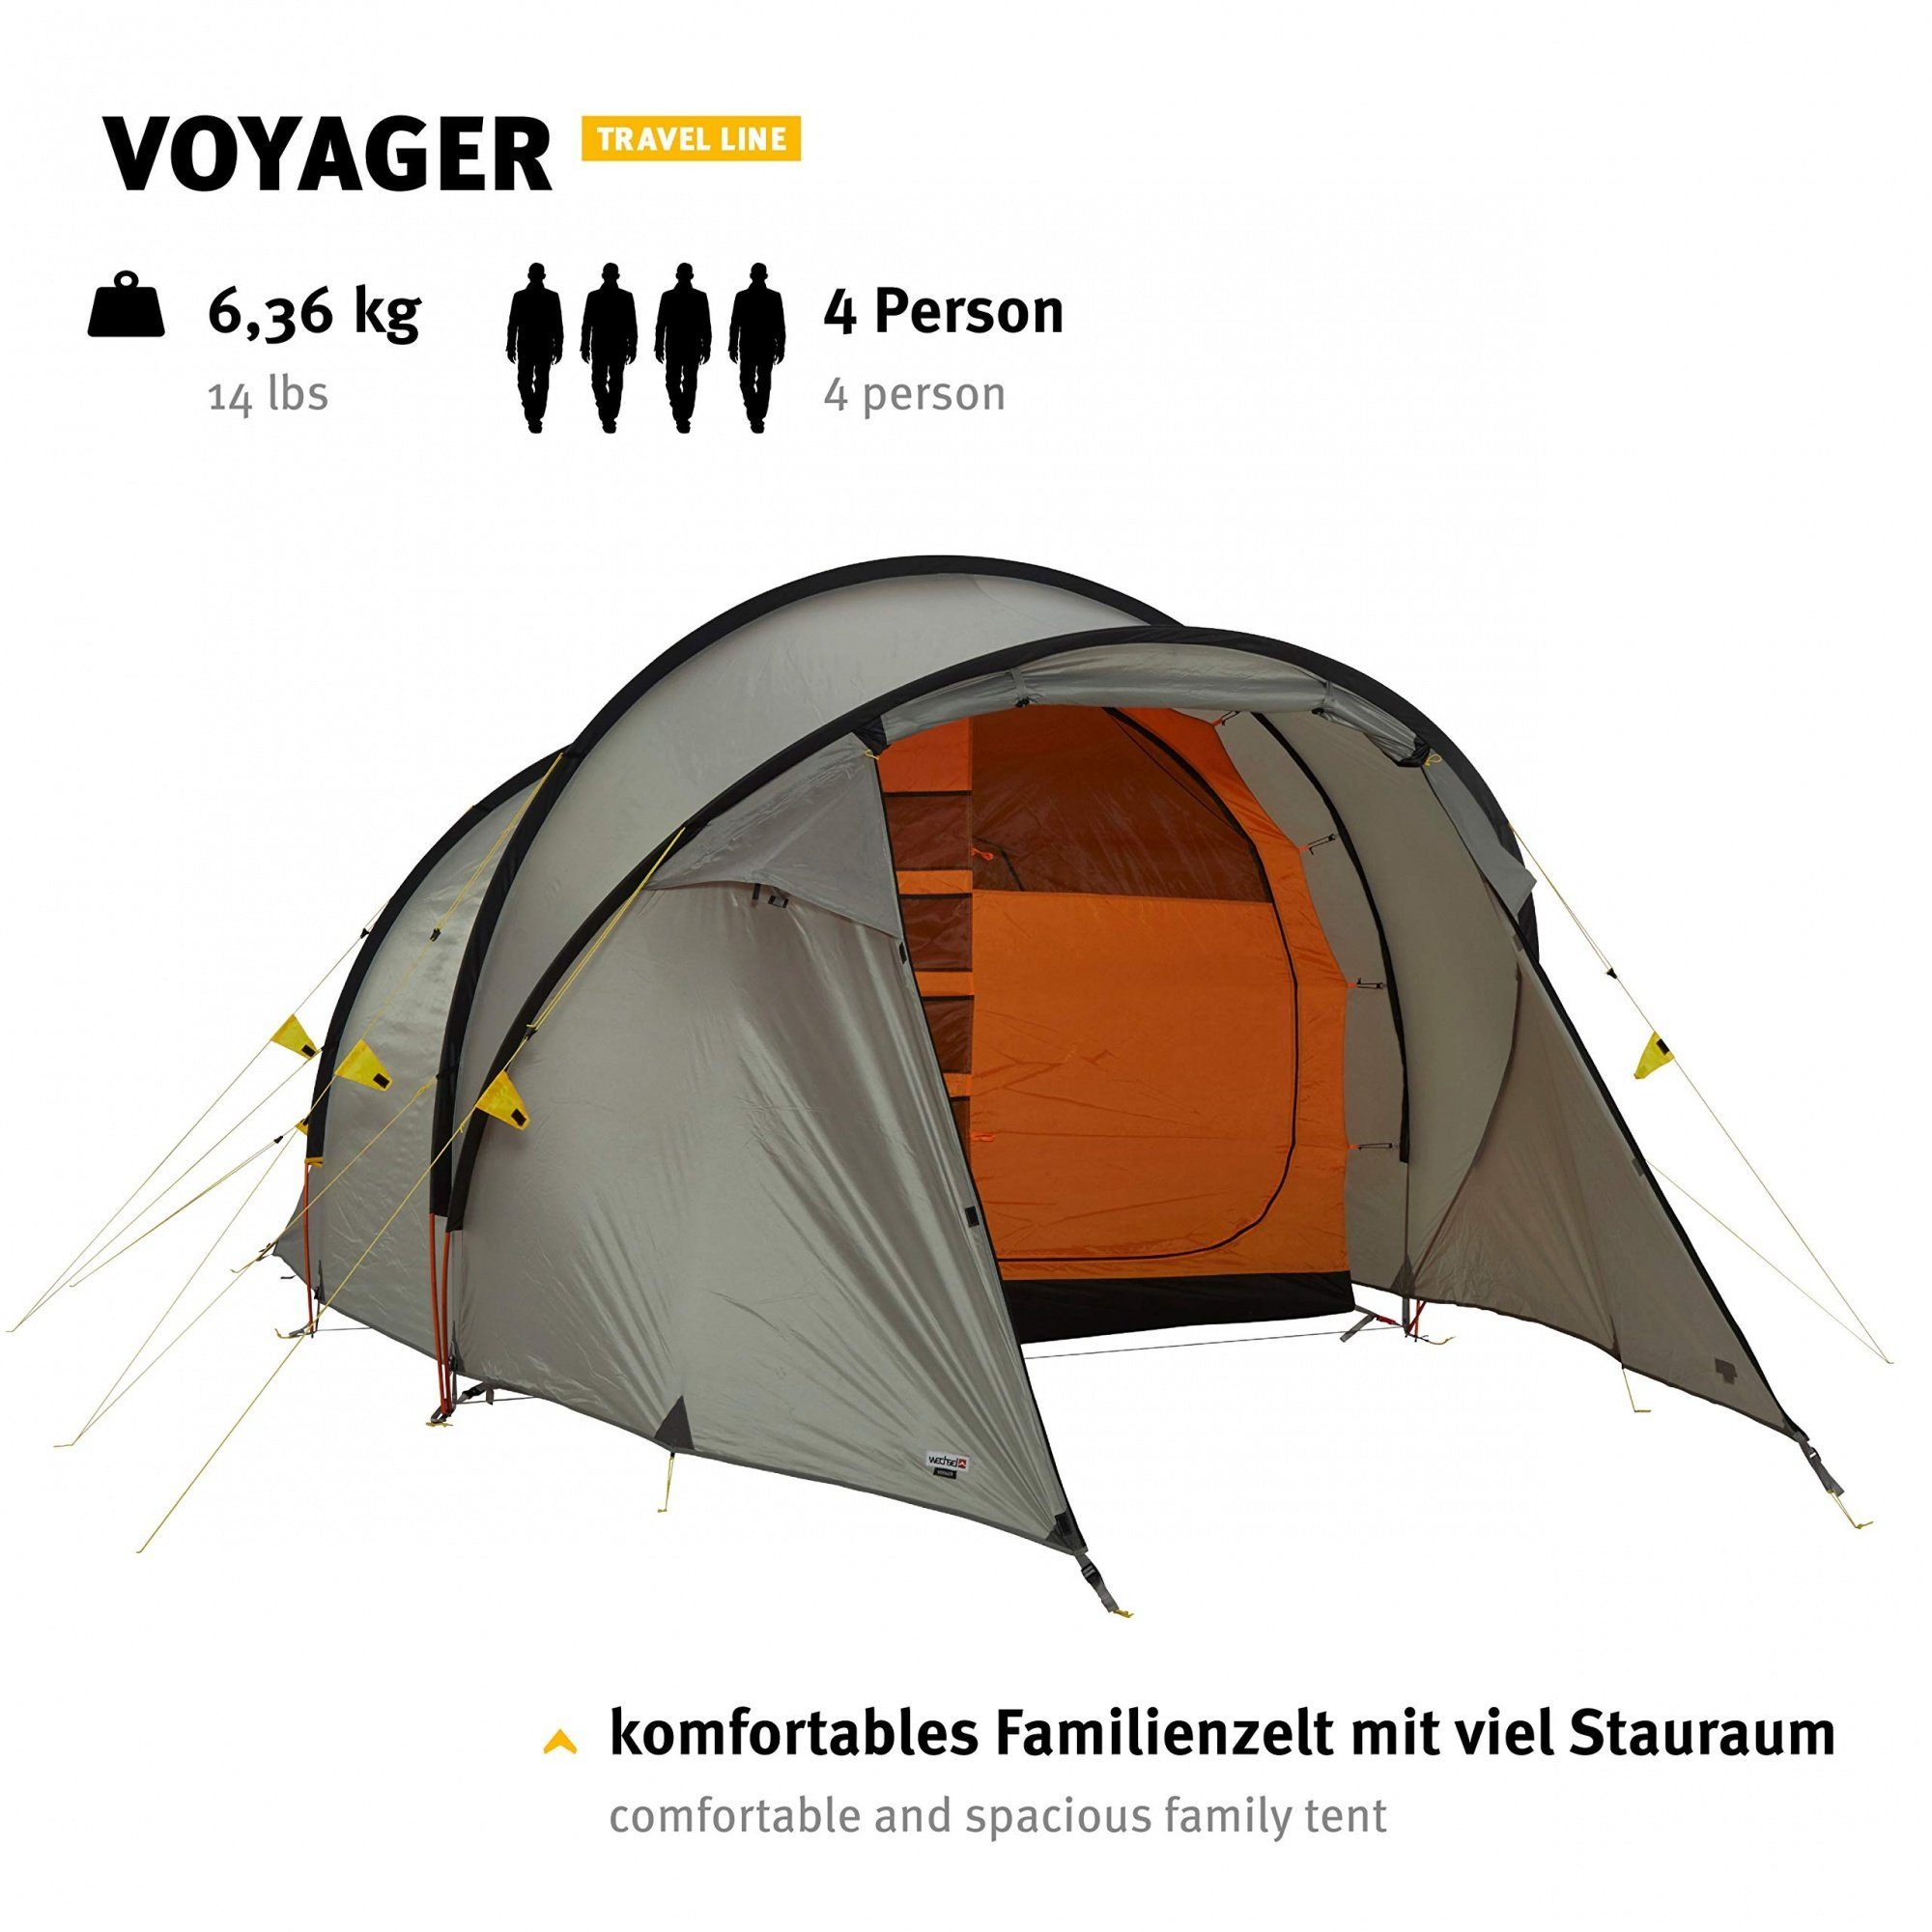 Wechsel Tents Tunnelzelt Familienzelt Voyager - Travel Line - 4 Personen  Zelt, Stehhöhe 1,80 m, Personen: 4